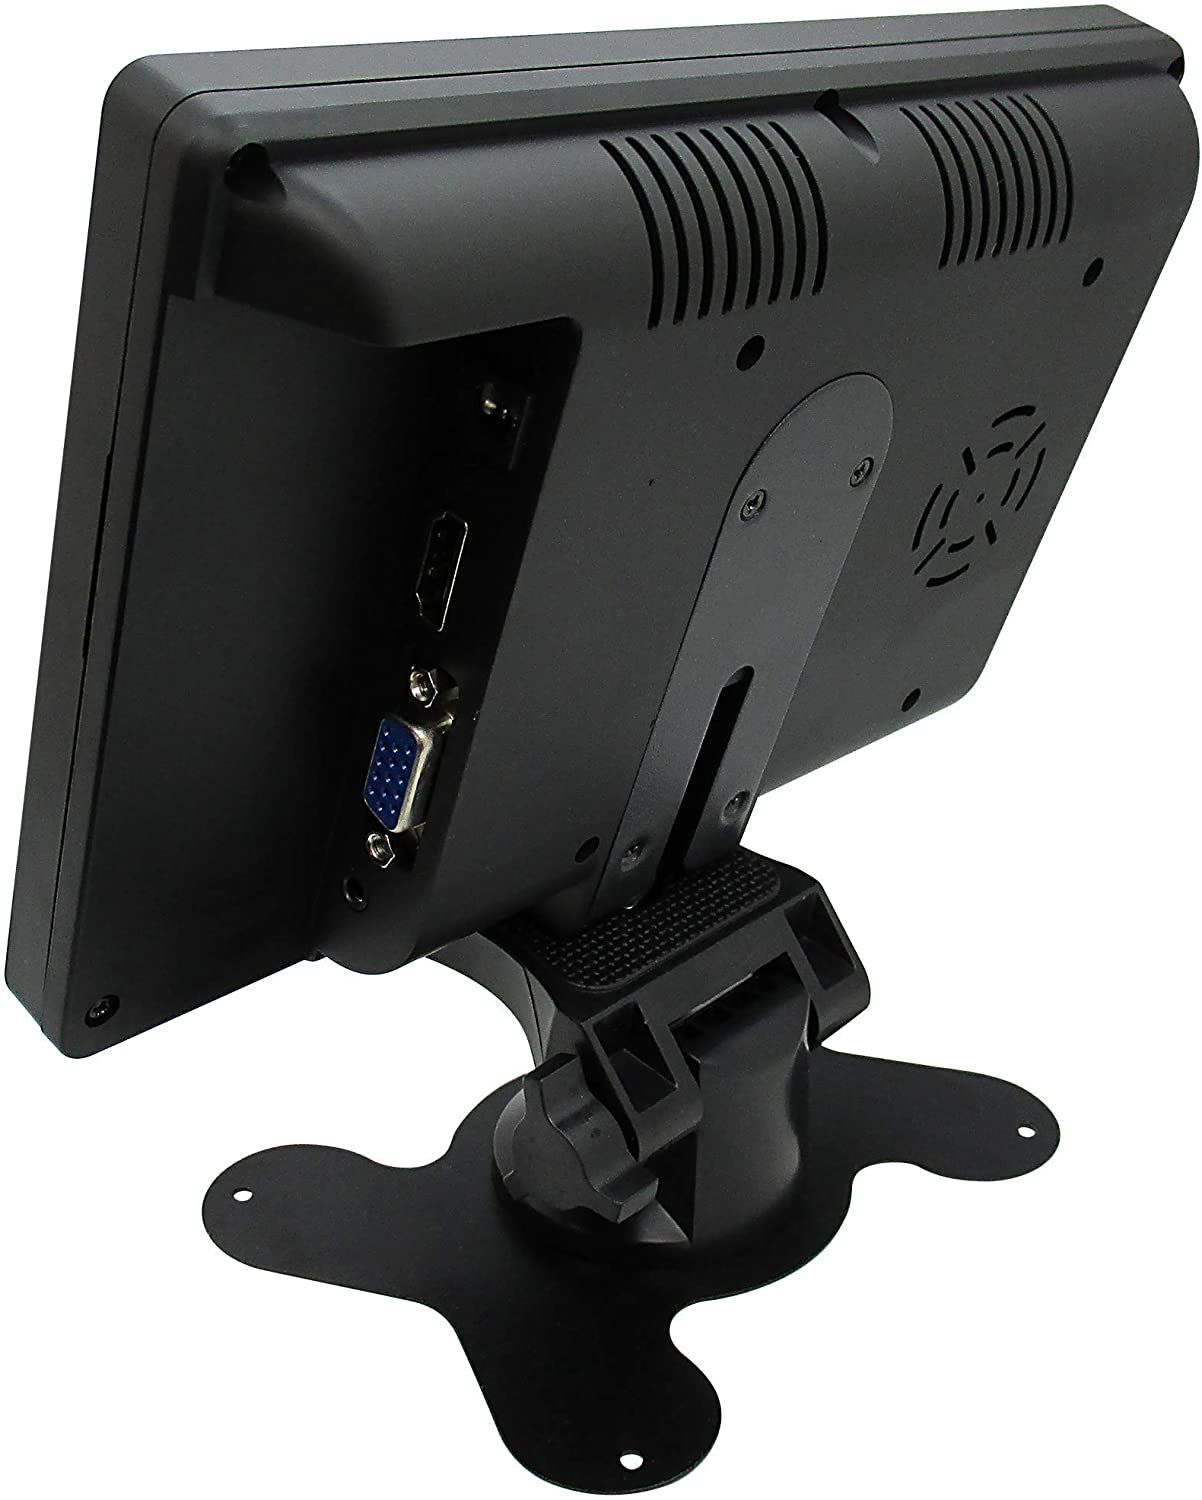 防犯カメラセット 録画可 超小型防犯カメラ 7インチモニターセット